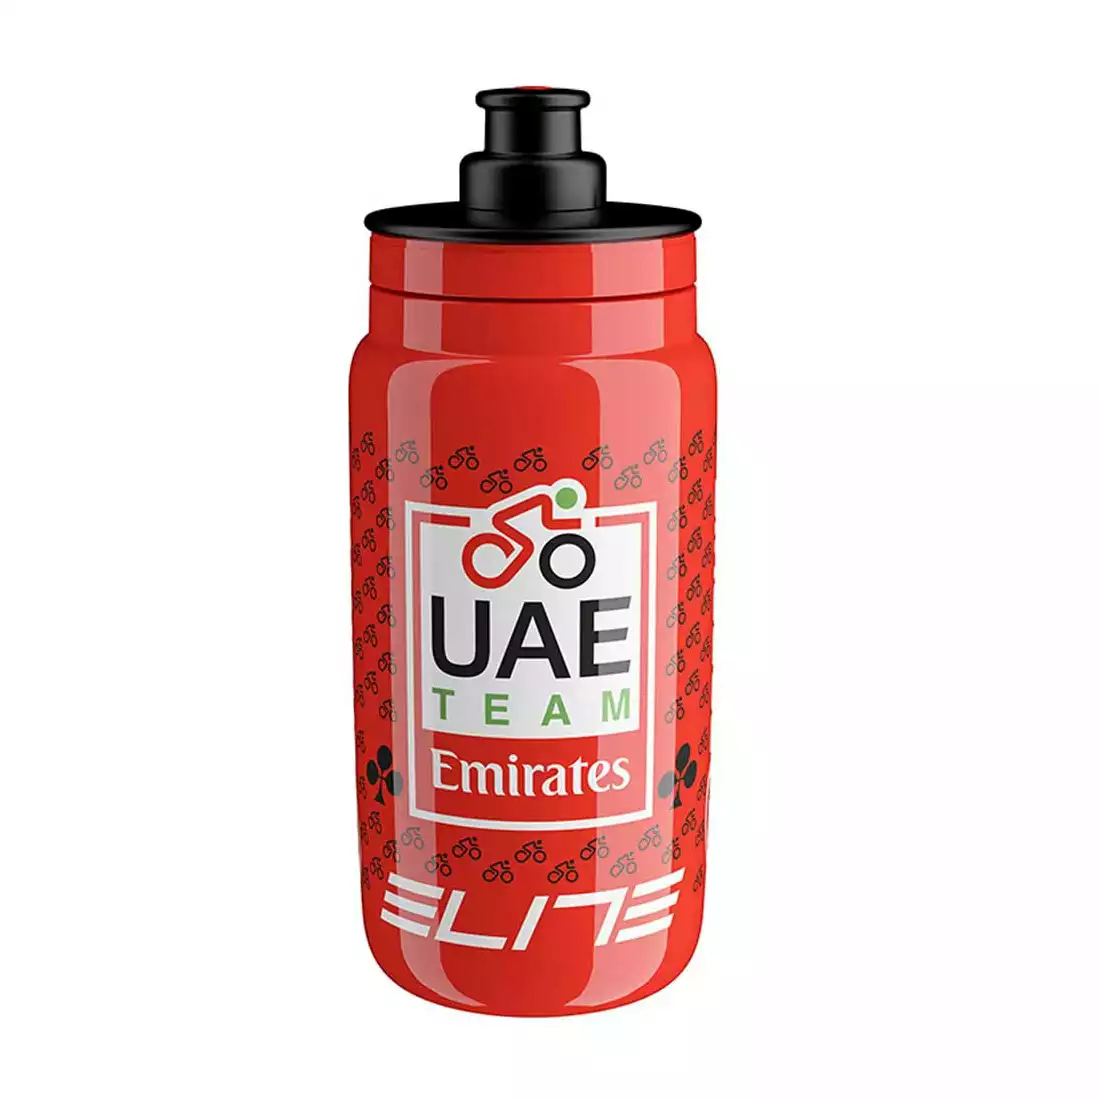 Elite FLY Teams 2022 UAE Team Emirates bicycle water bottle 550ml, red